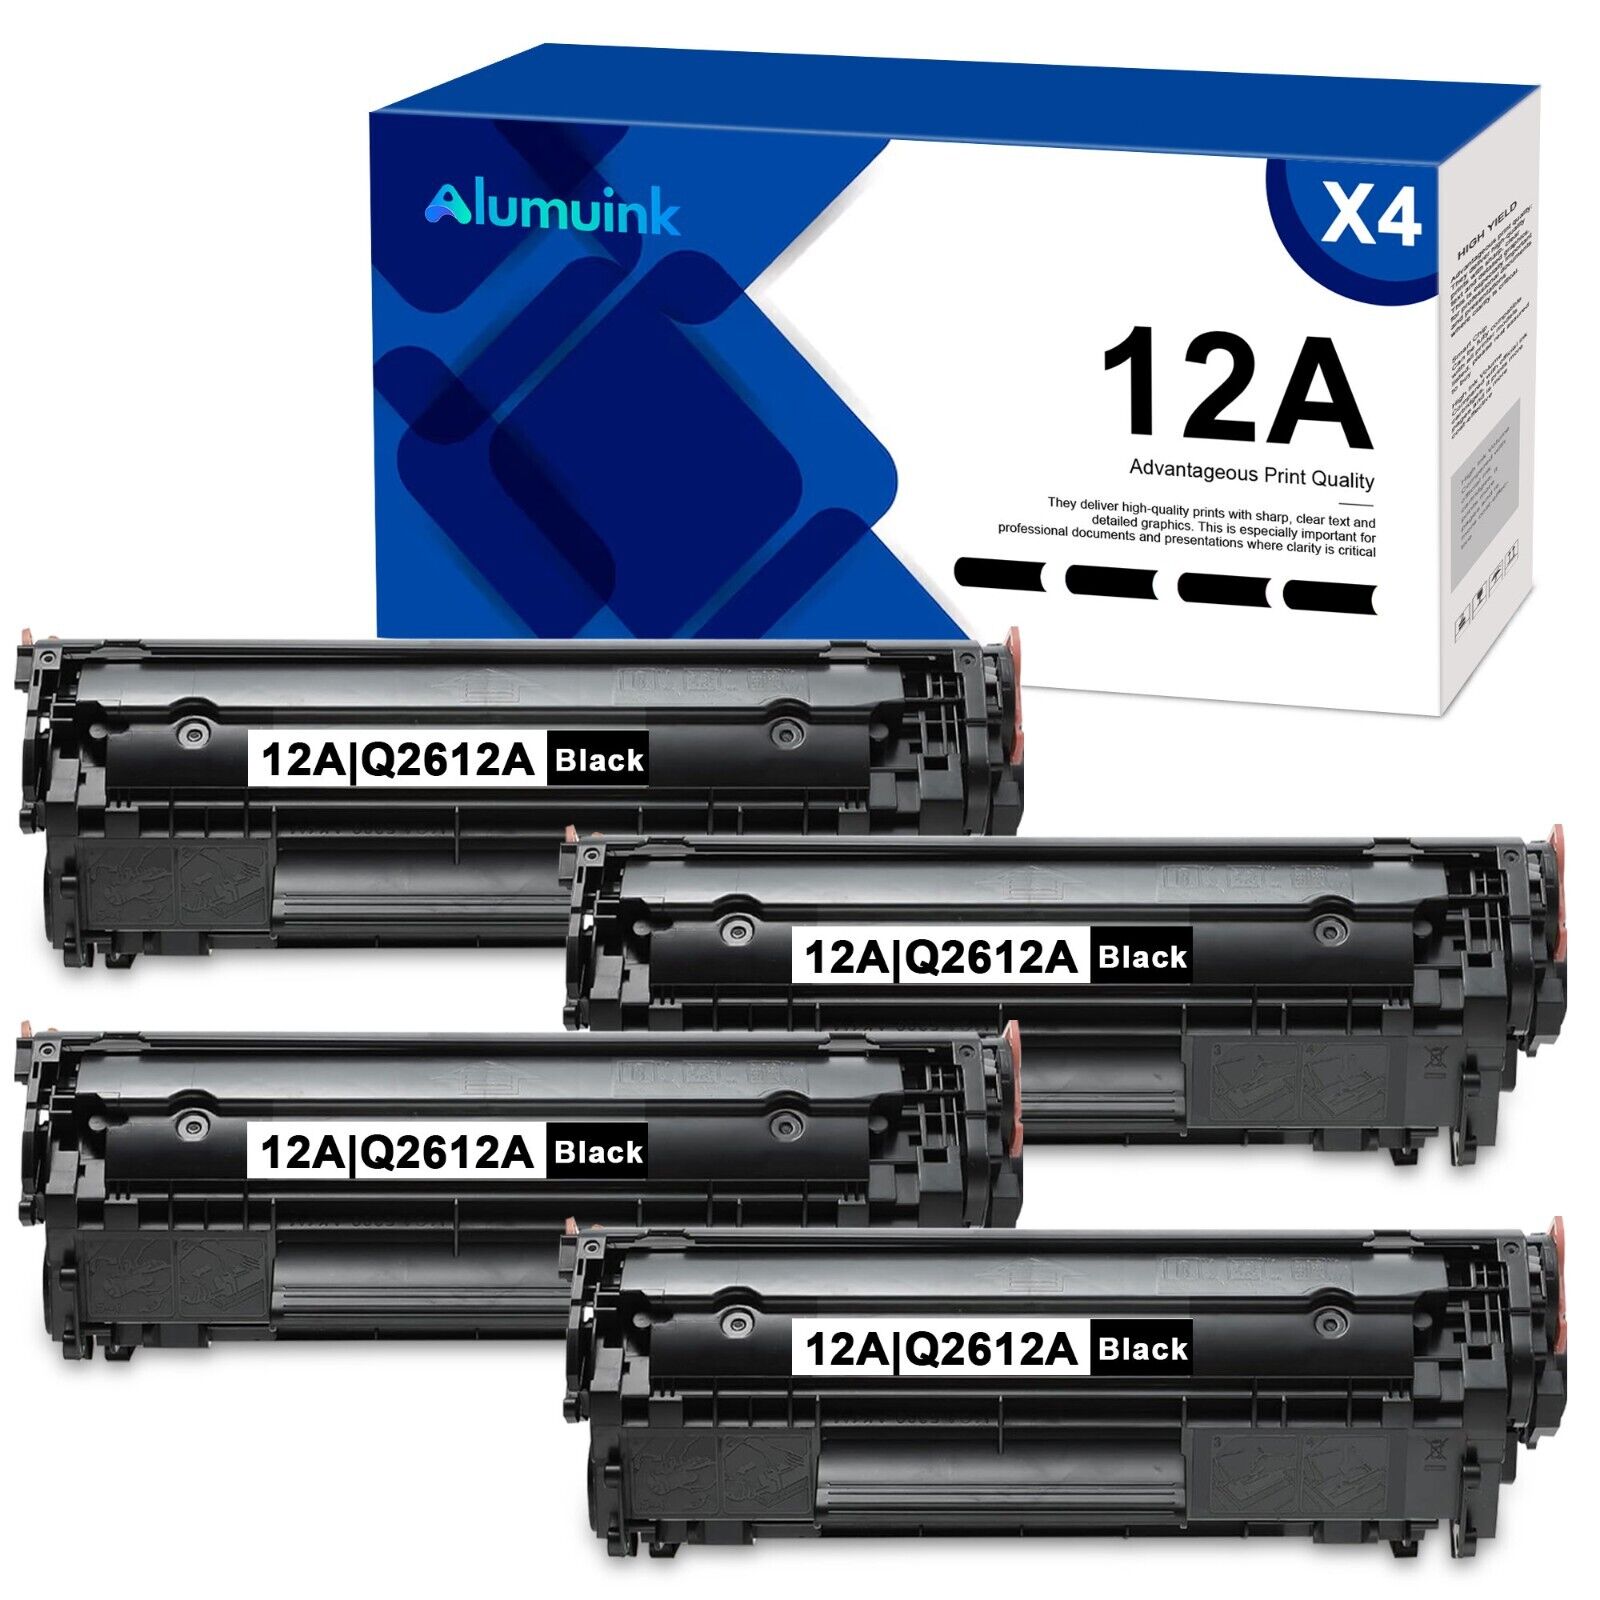 12A Q2612A Black Toner Compatible for HP 12A Toner MFP M1005(4-Pack, Black)